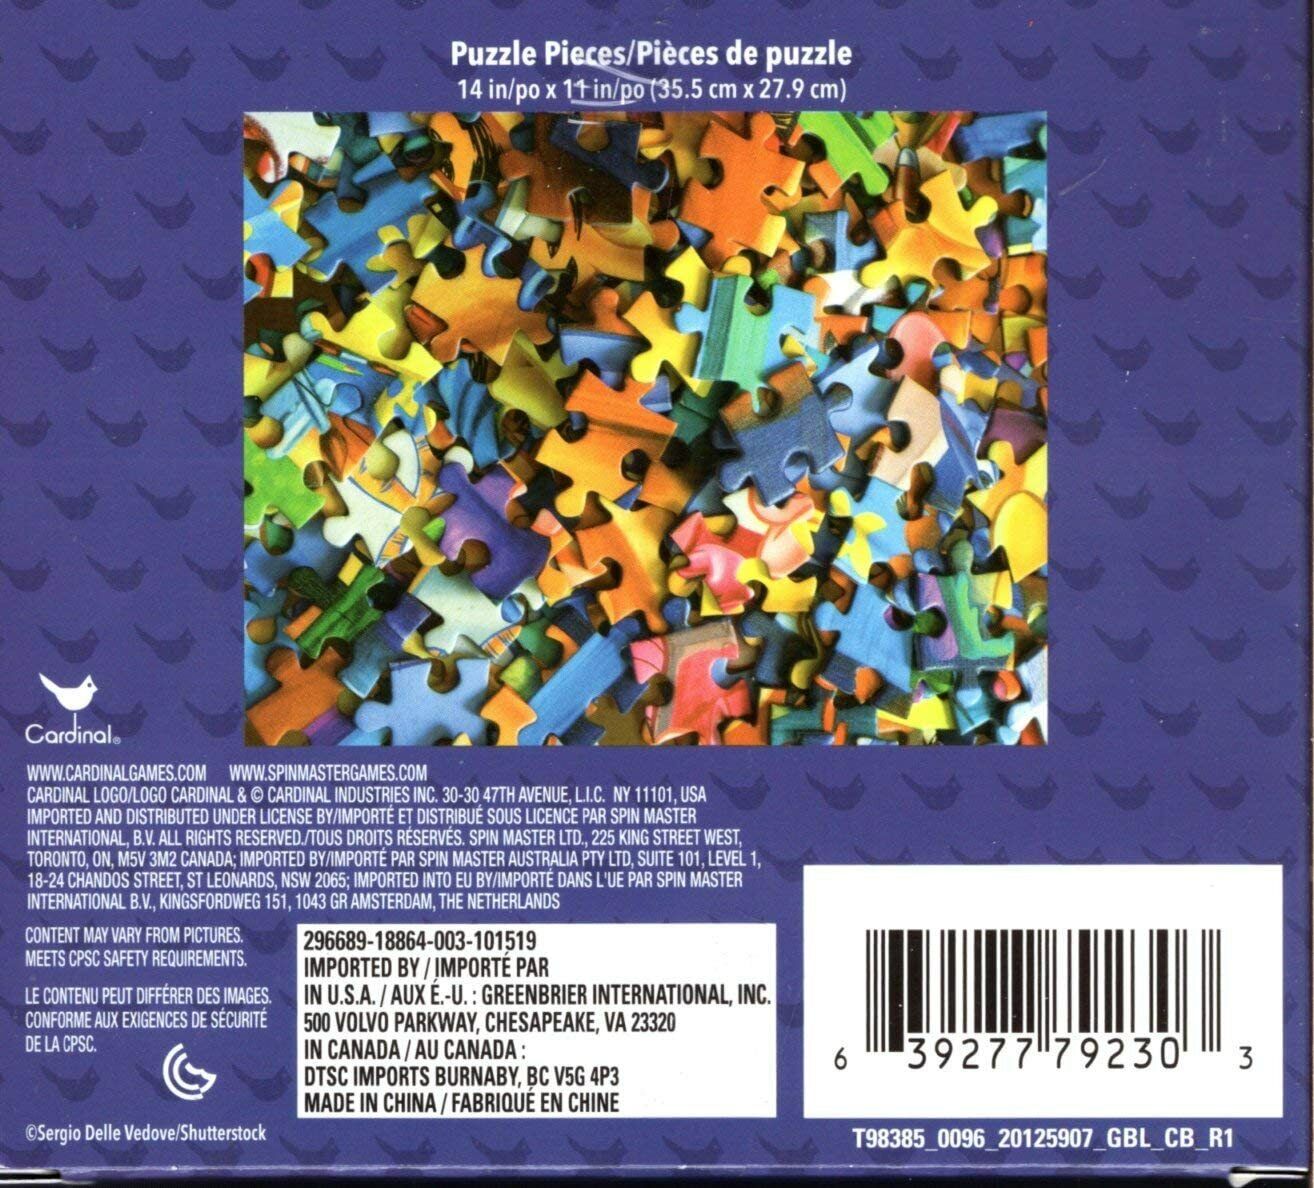 Puzzle Pieces - 300 Piece Jigsaw Puzzle